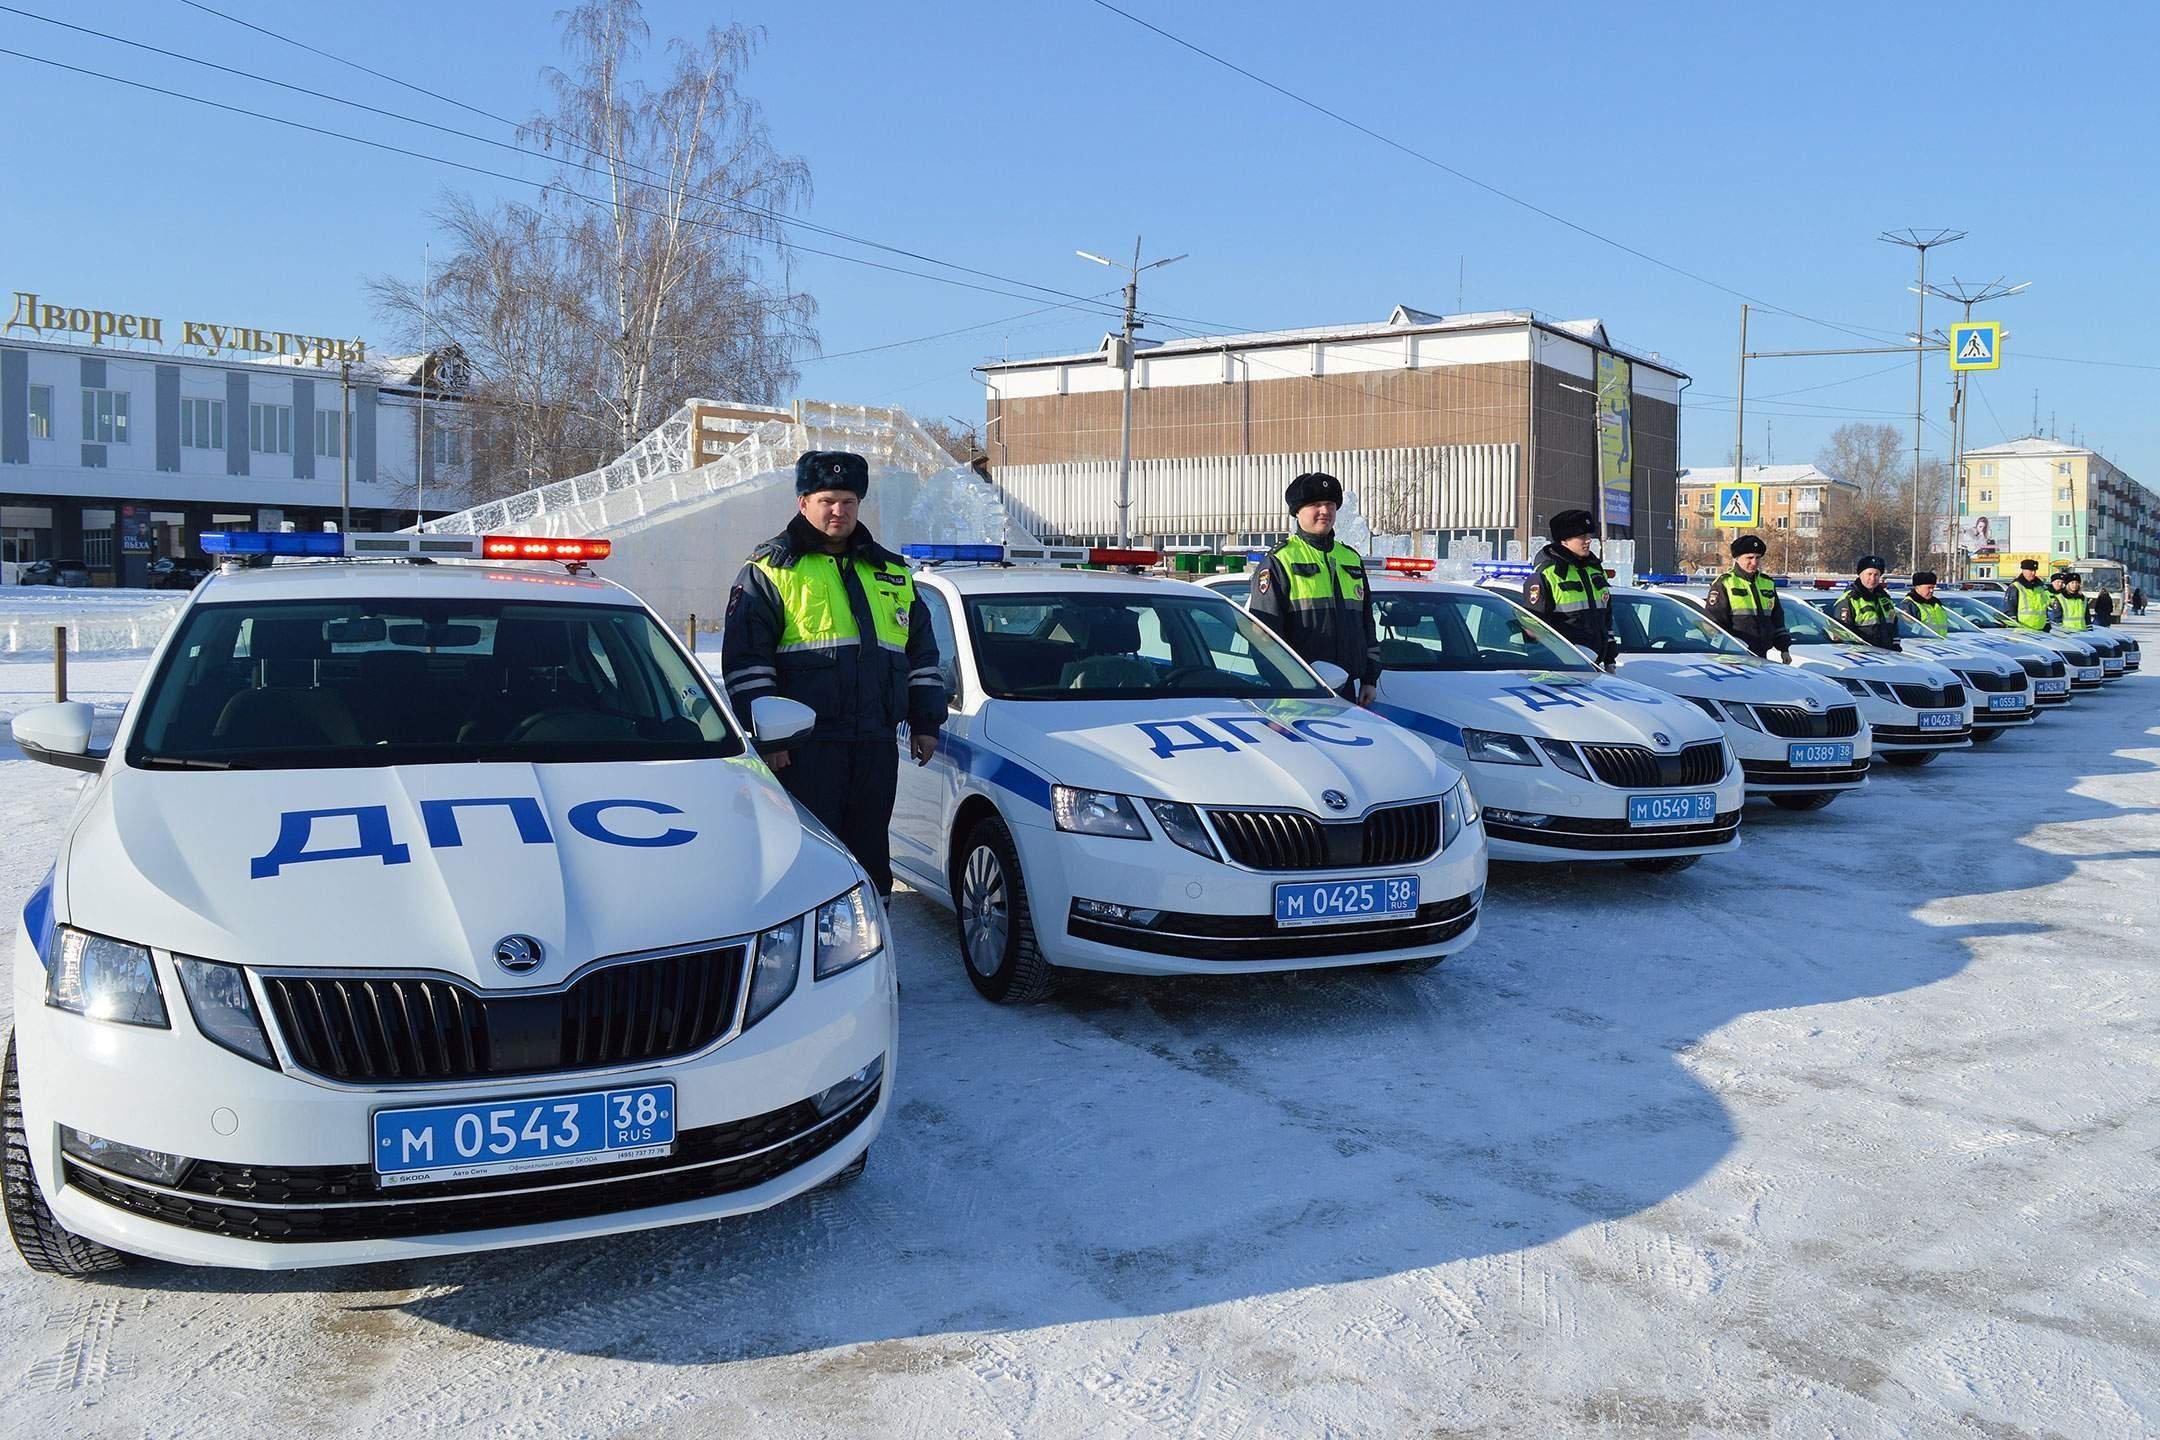 Гибдд береговая. Skoda Octavia 2020 Police. Автопарк ДПС России.